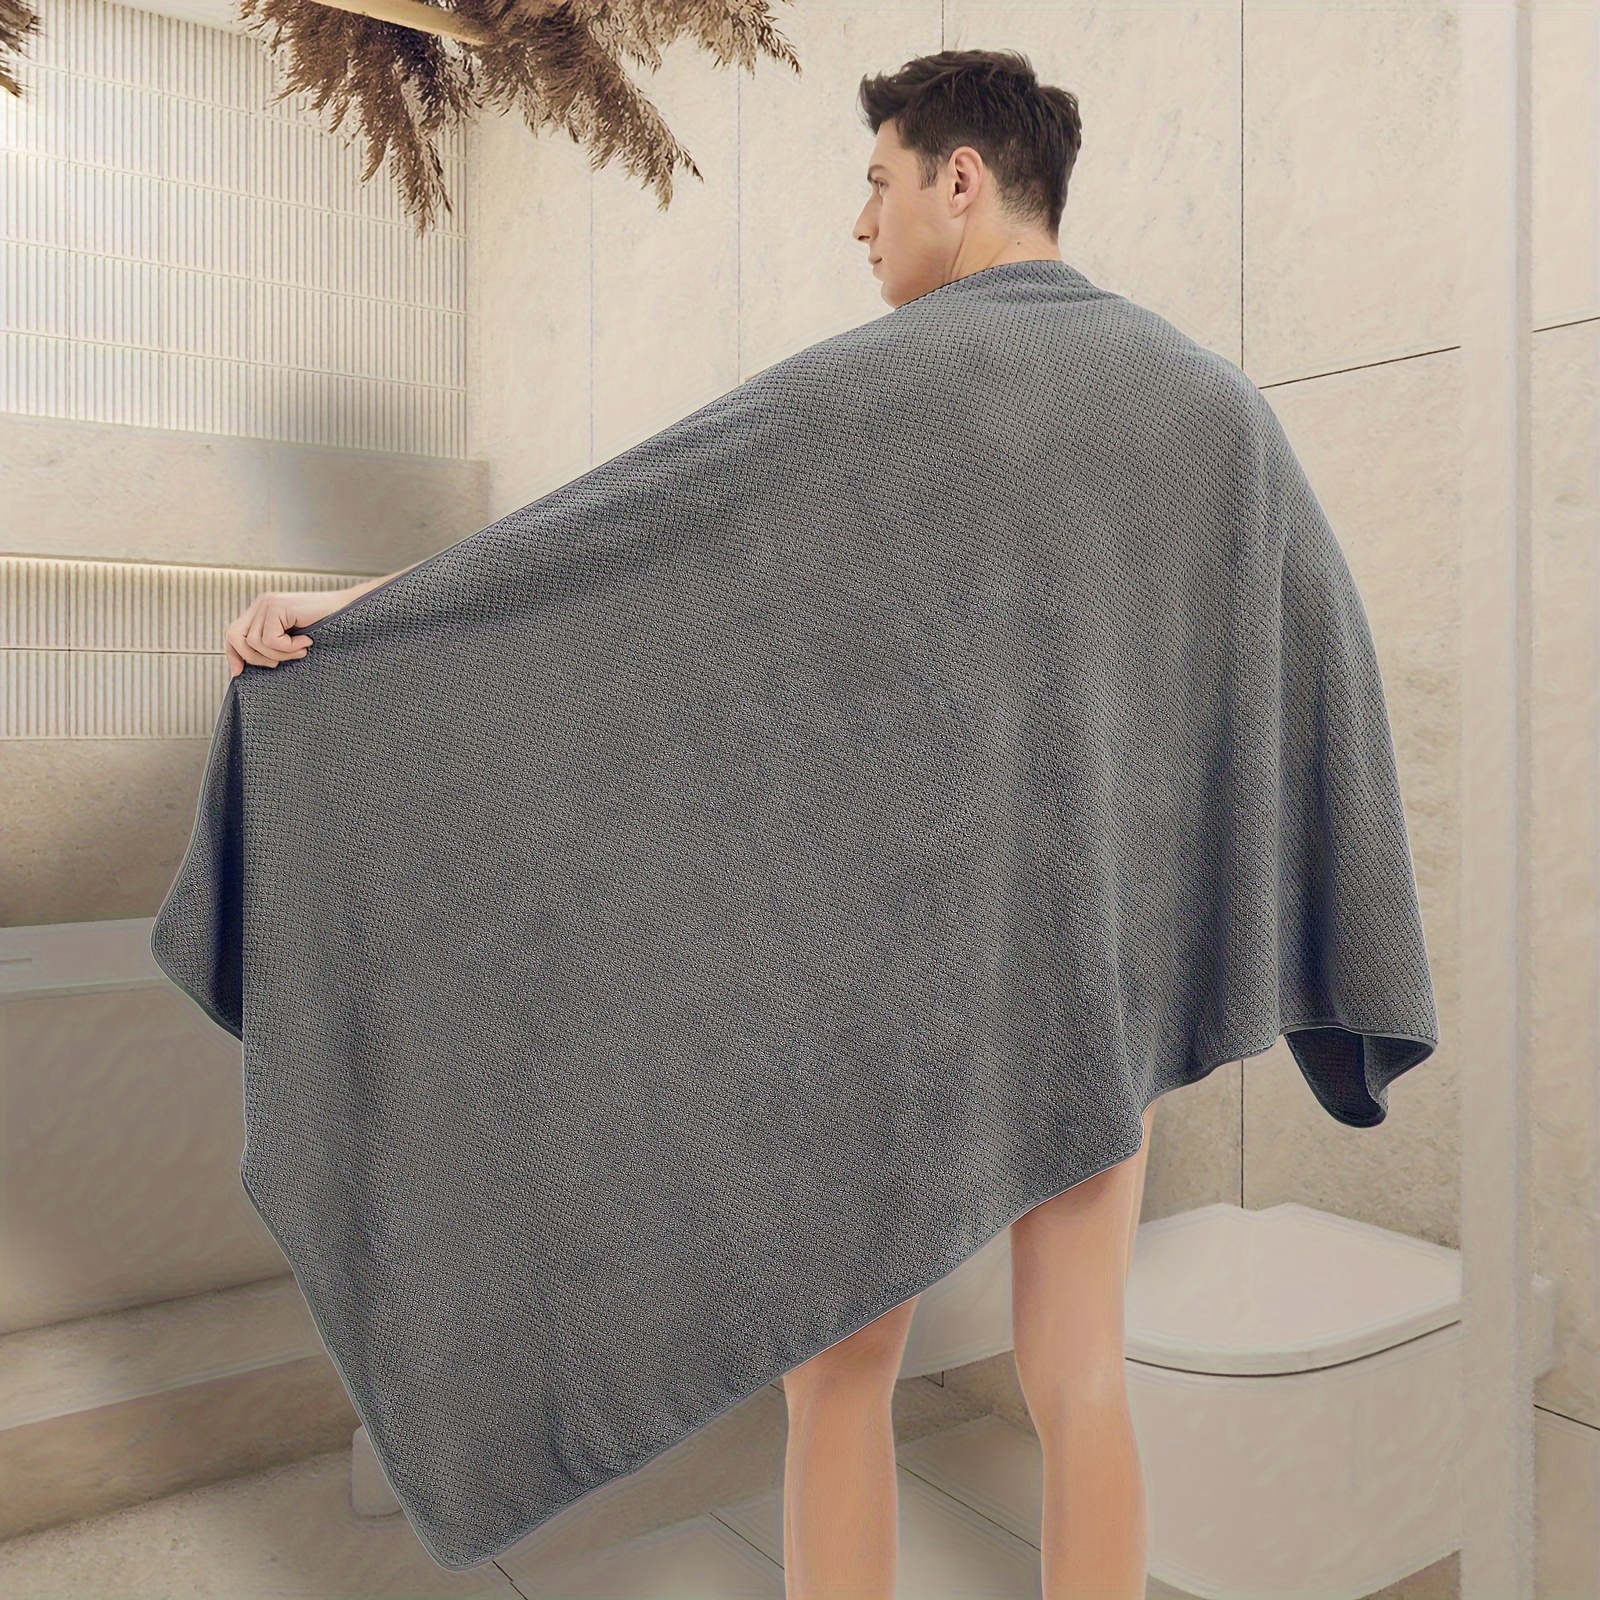  LIFEMUSION Toallas de baño de color gris degradado para mujer,  31.5 x 95 pulgadas, toallas de baño grandes de madera a rayas, toalla de  baño de microfibra para adultos, ducha, spa/gimnasio 